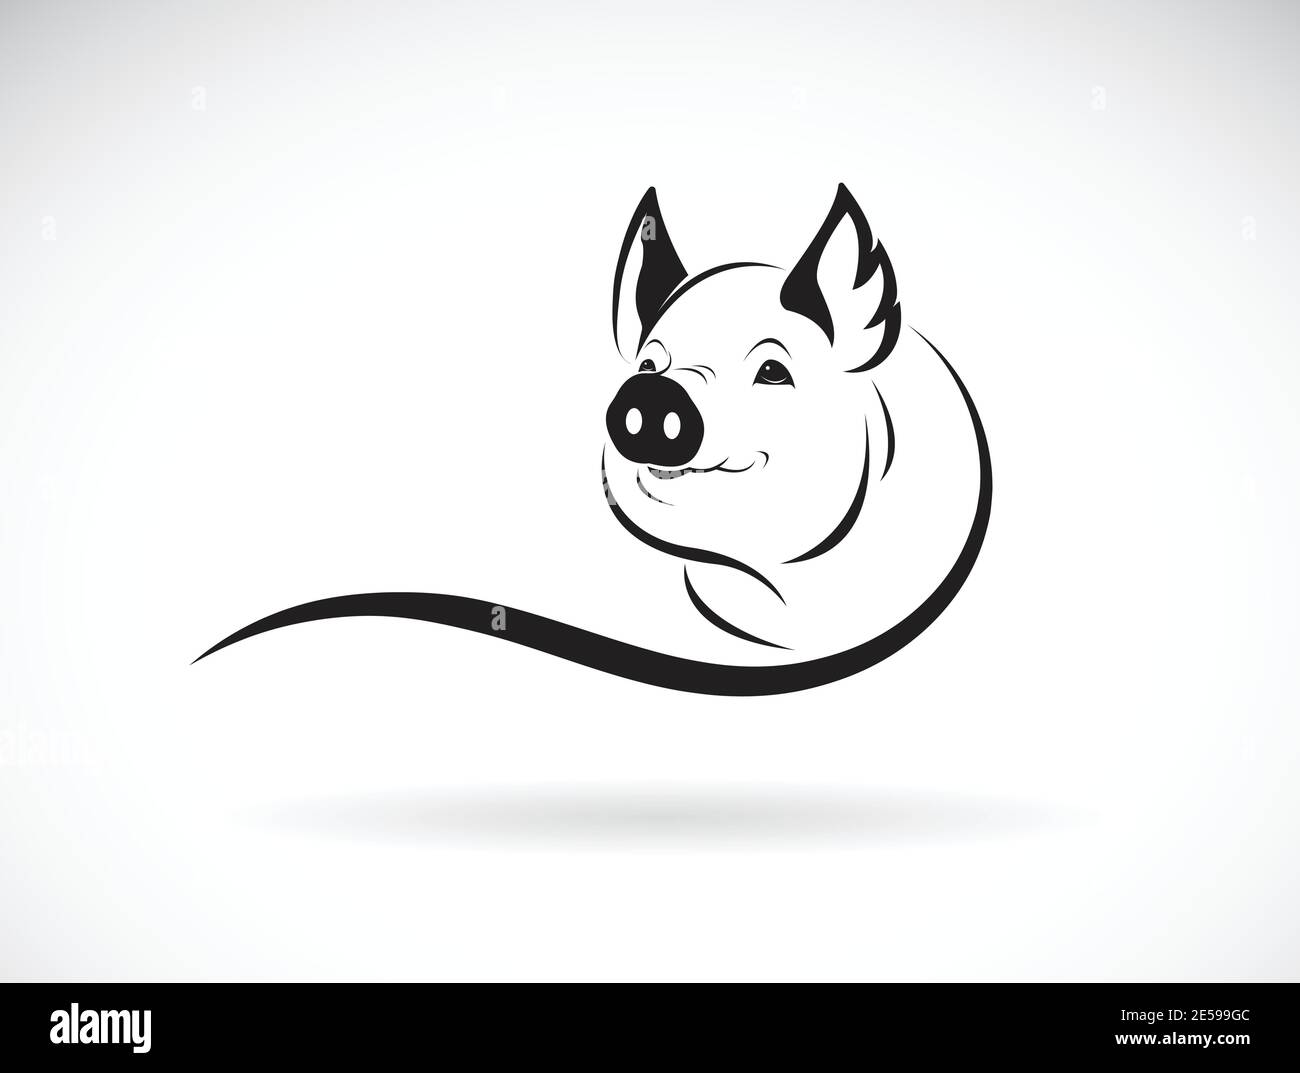 Vektor von einem Schwein Kopf Design auf weißem Hintergrund. Nutztiere. Schweinkopf-Logo oder -Symbol. Leicht editierbare Vektorgrafik mit Ebenen. Stock Vektor